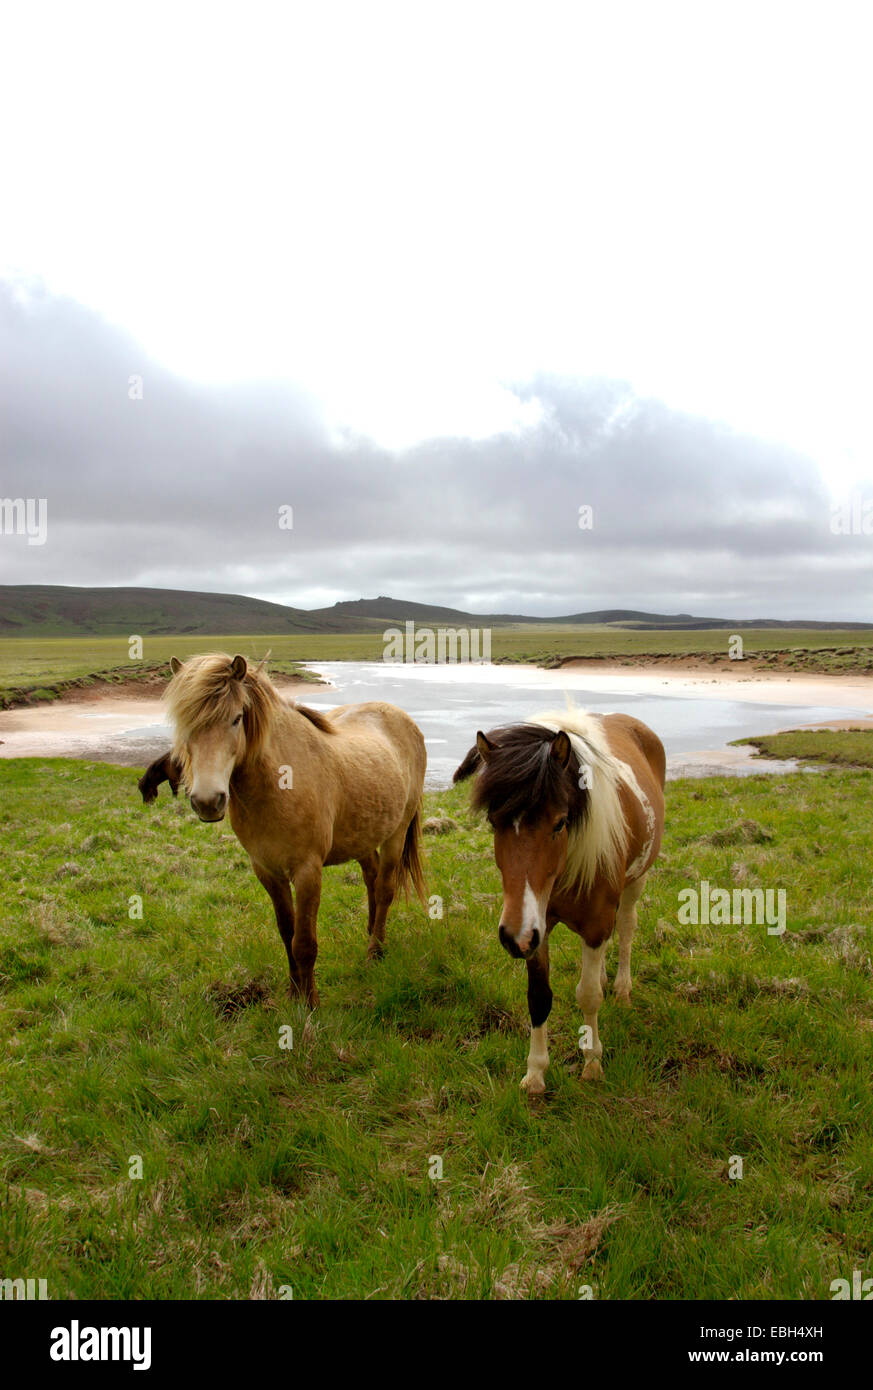 Islandic horse, Iceland pony (Equus przewalskii f. caballus), two individuals on pasture, Iceland Stock Photo